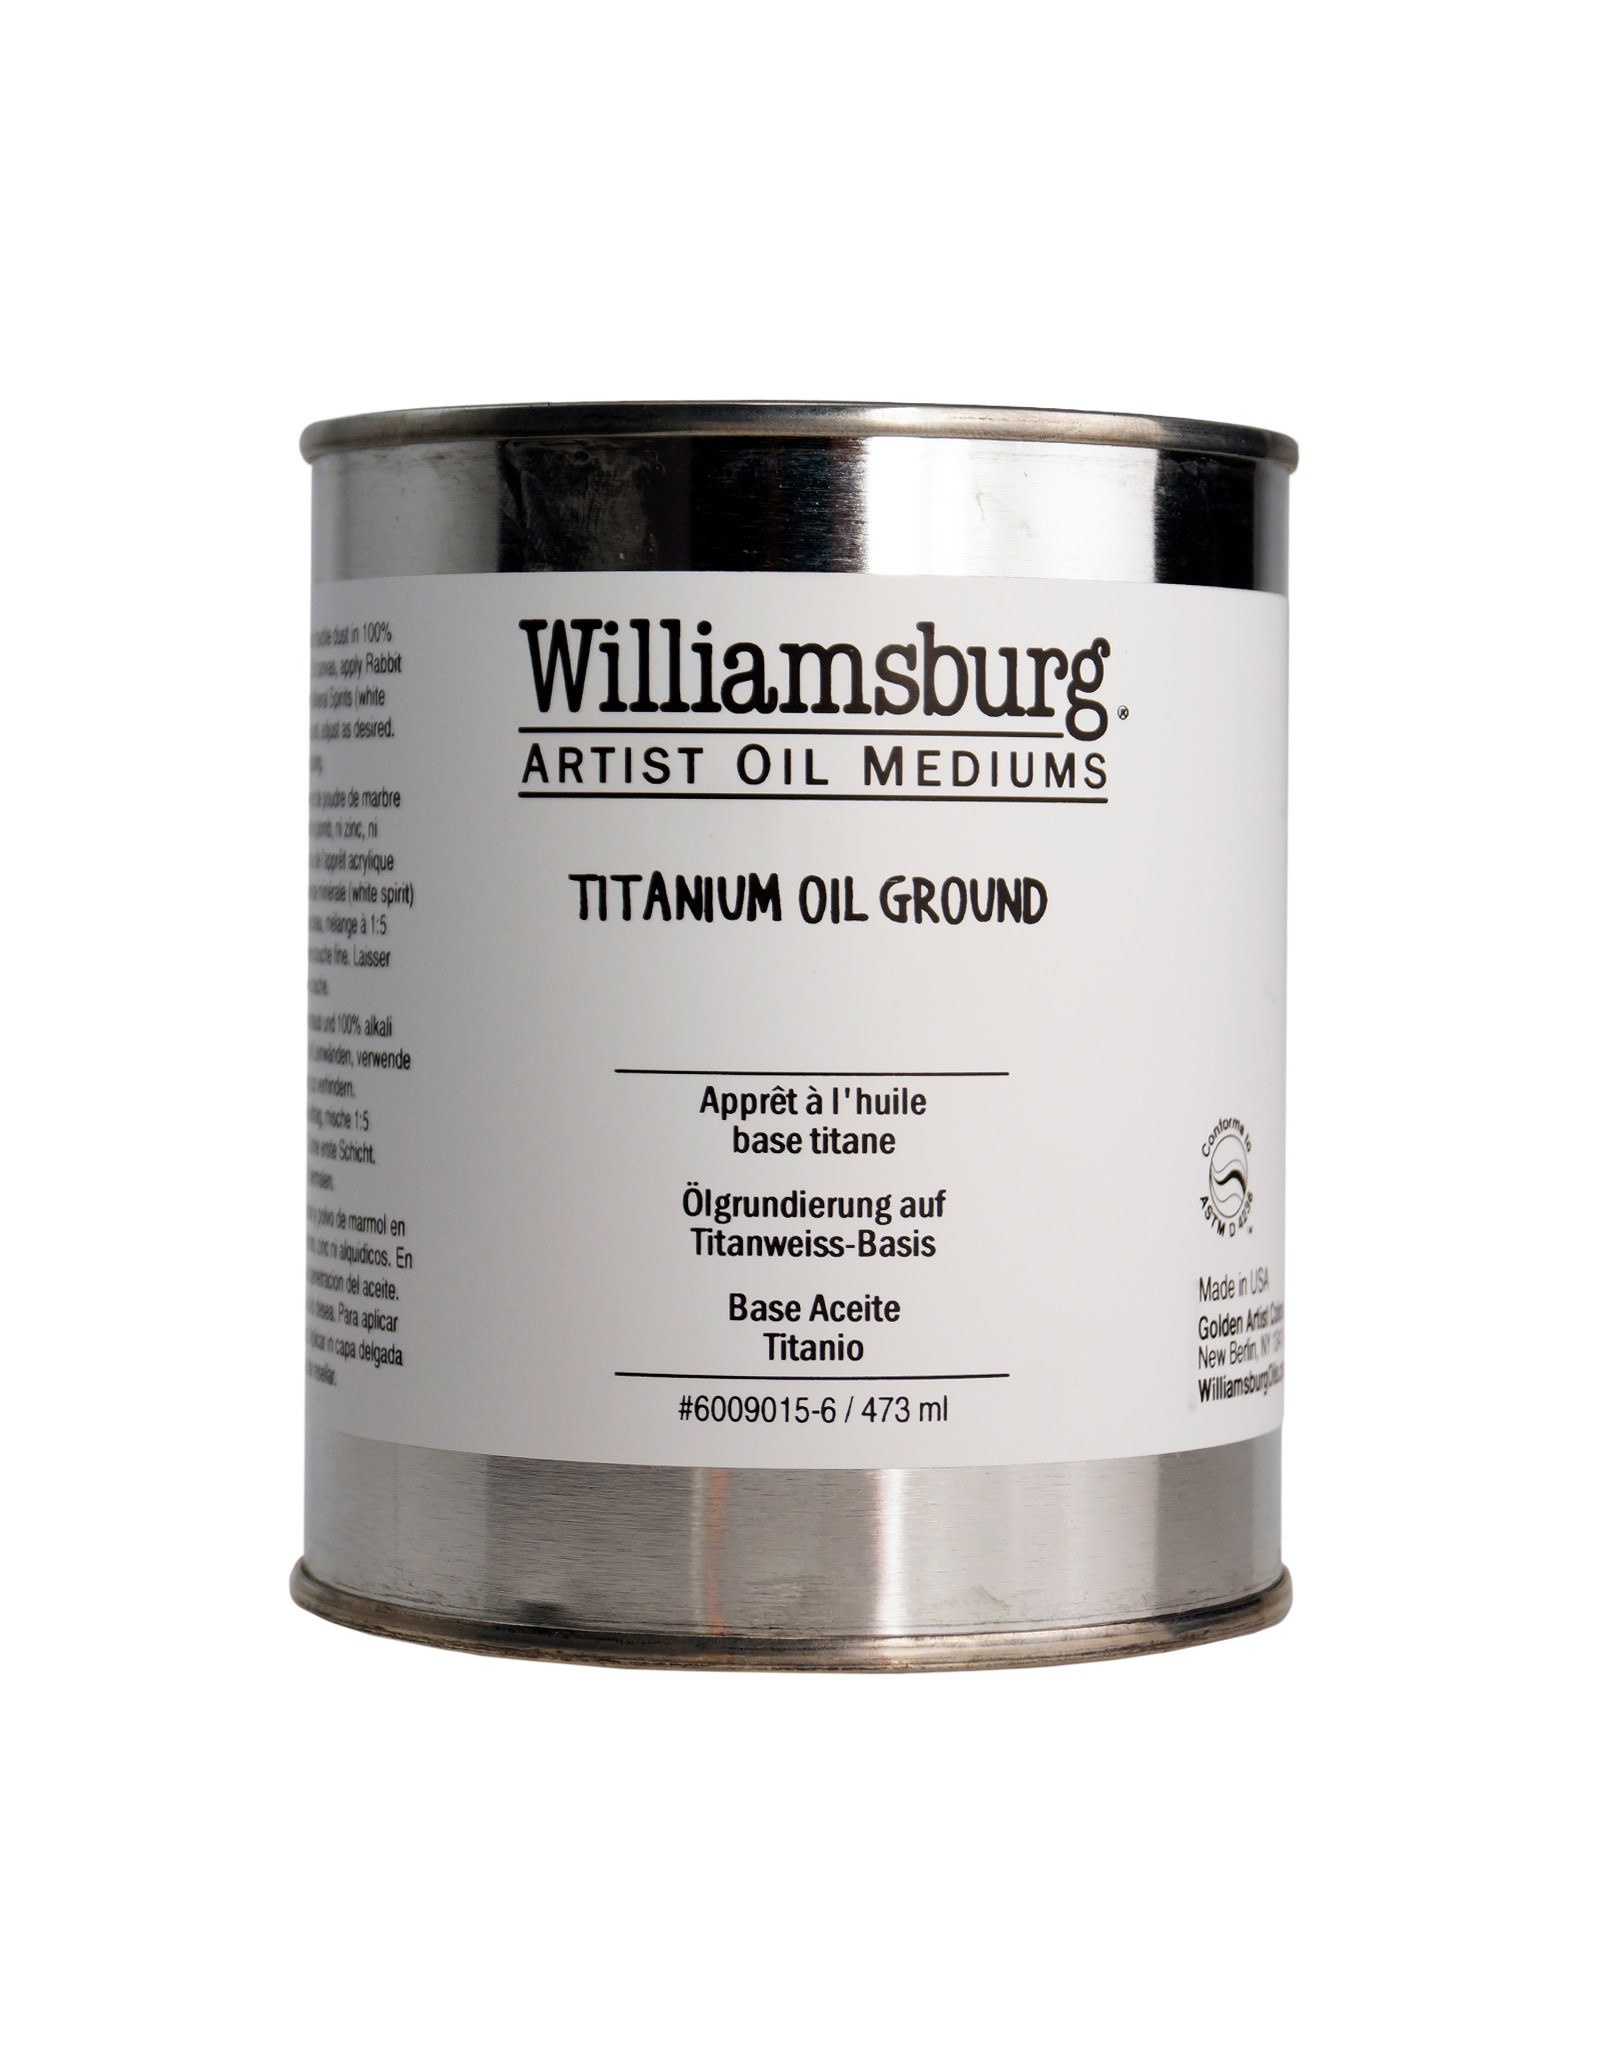 Golden Williamsburg Titanium Oil Ground 16oz